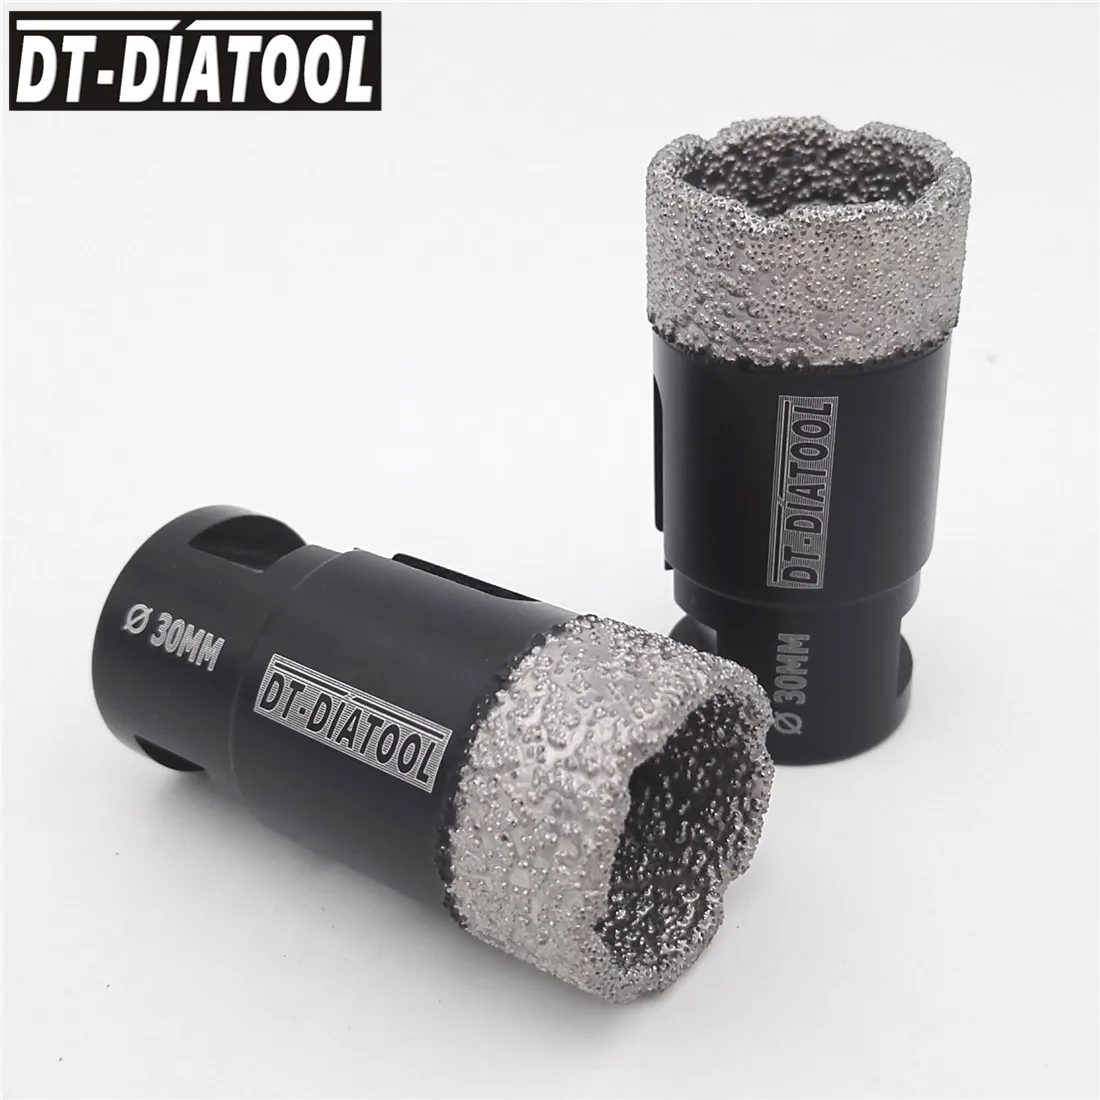 DT-DIATOOL 2 шт. 30 мм сверла сухие вакуумные пайки Алмазные сверла коронки для мрамора гранита плитка отверстие пилы с резьбой M14 от AliExpress RU&CIS NEW